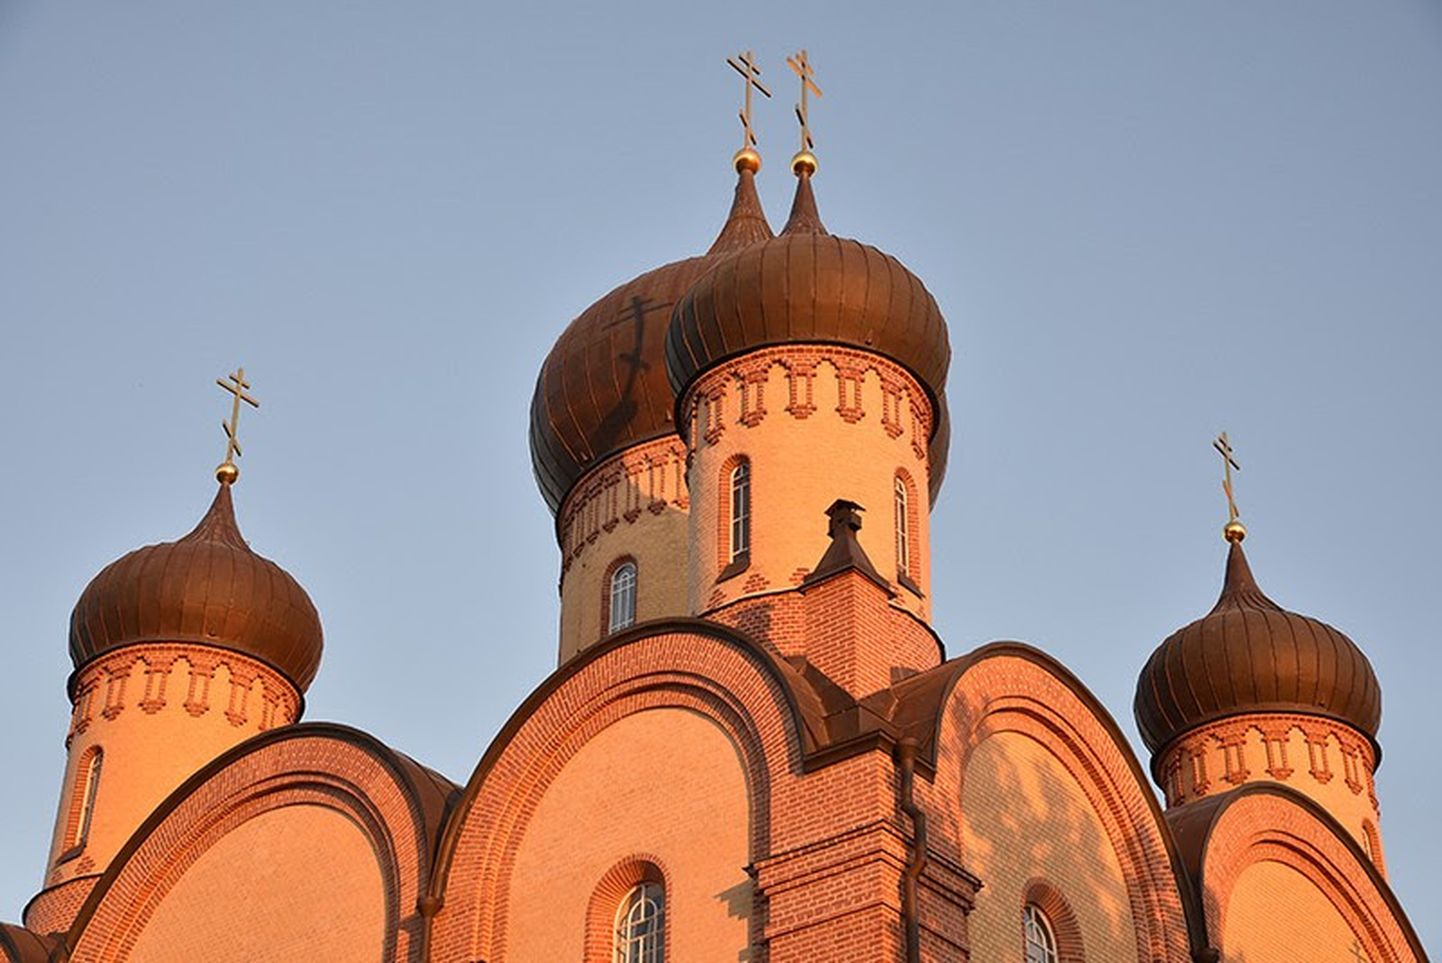 Eestis kehtestatud eriolukorra tõttu ristimistalitusi Pühtitsa kloostris ajutiselt ei tehta.